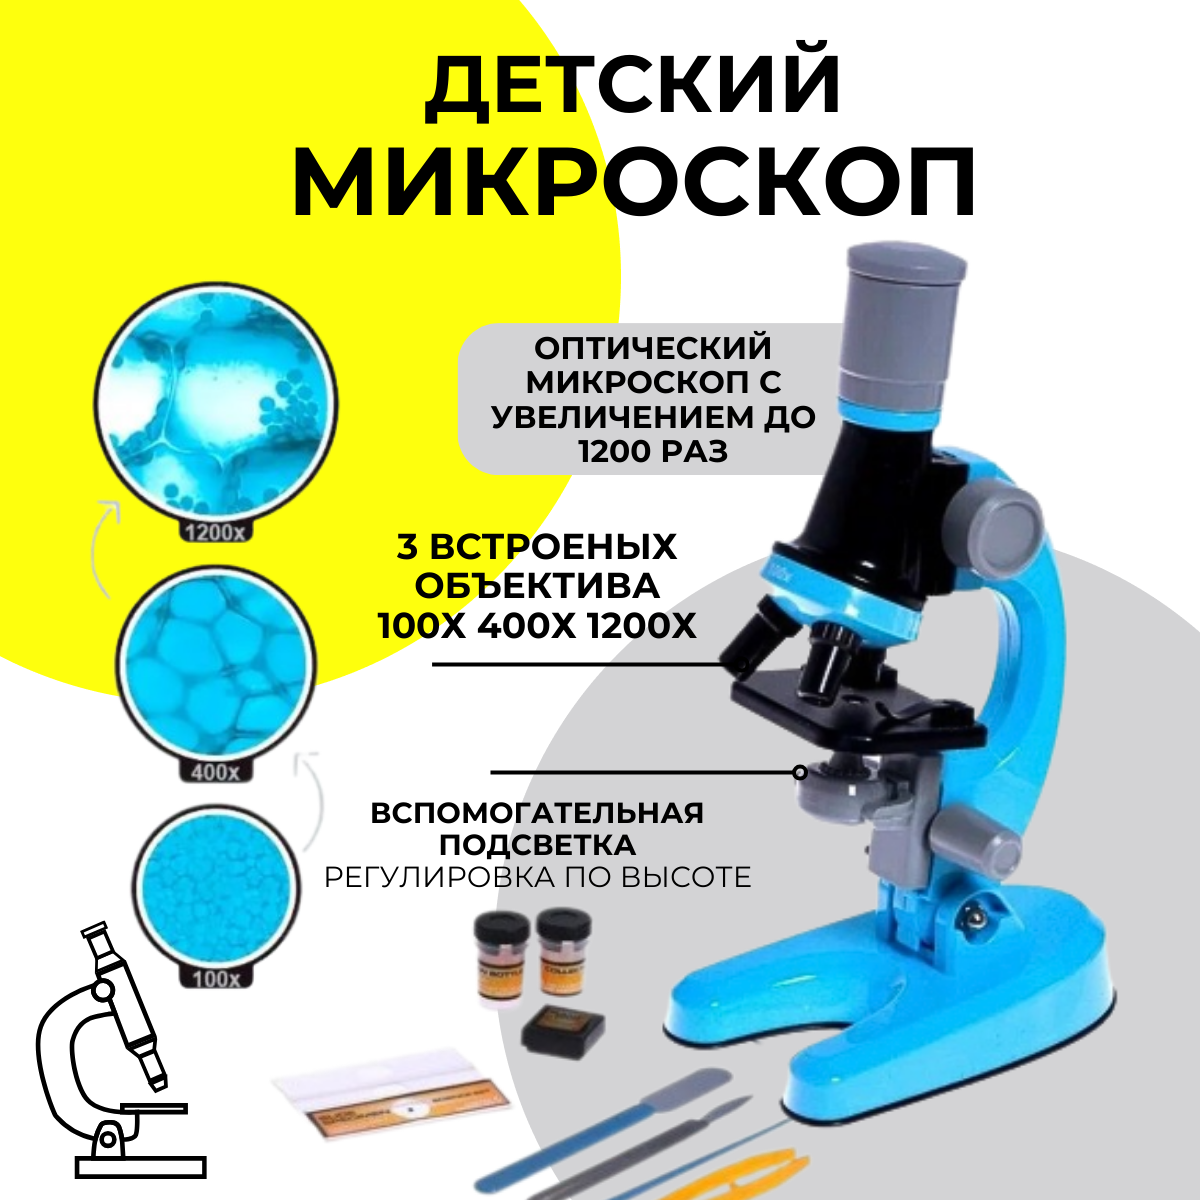 Микроскоп MKB4849708 детский Юный ботаник с подсветкой, кратность х100, х400, х1200